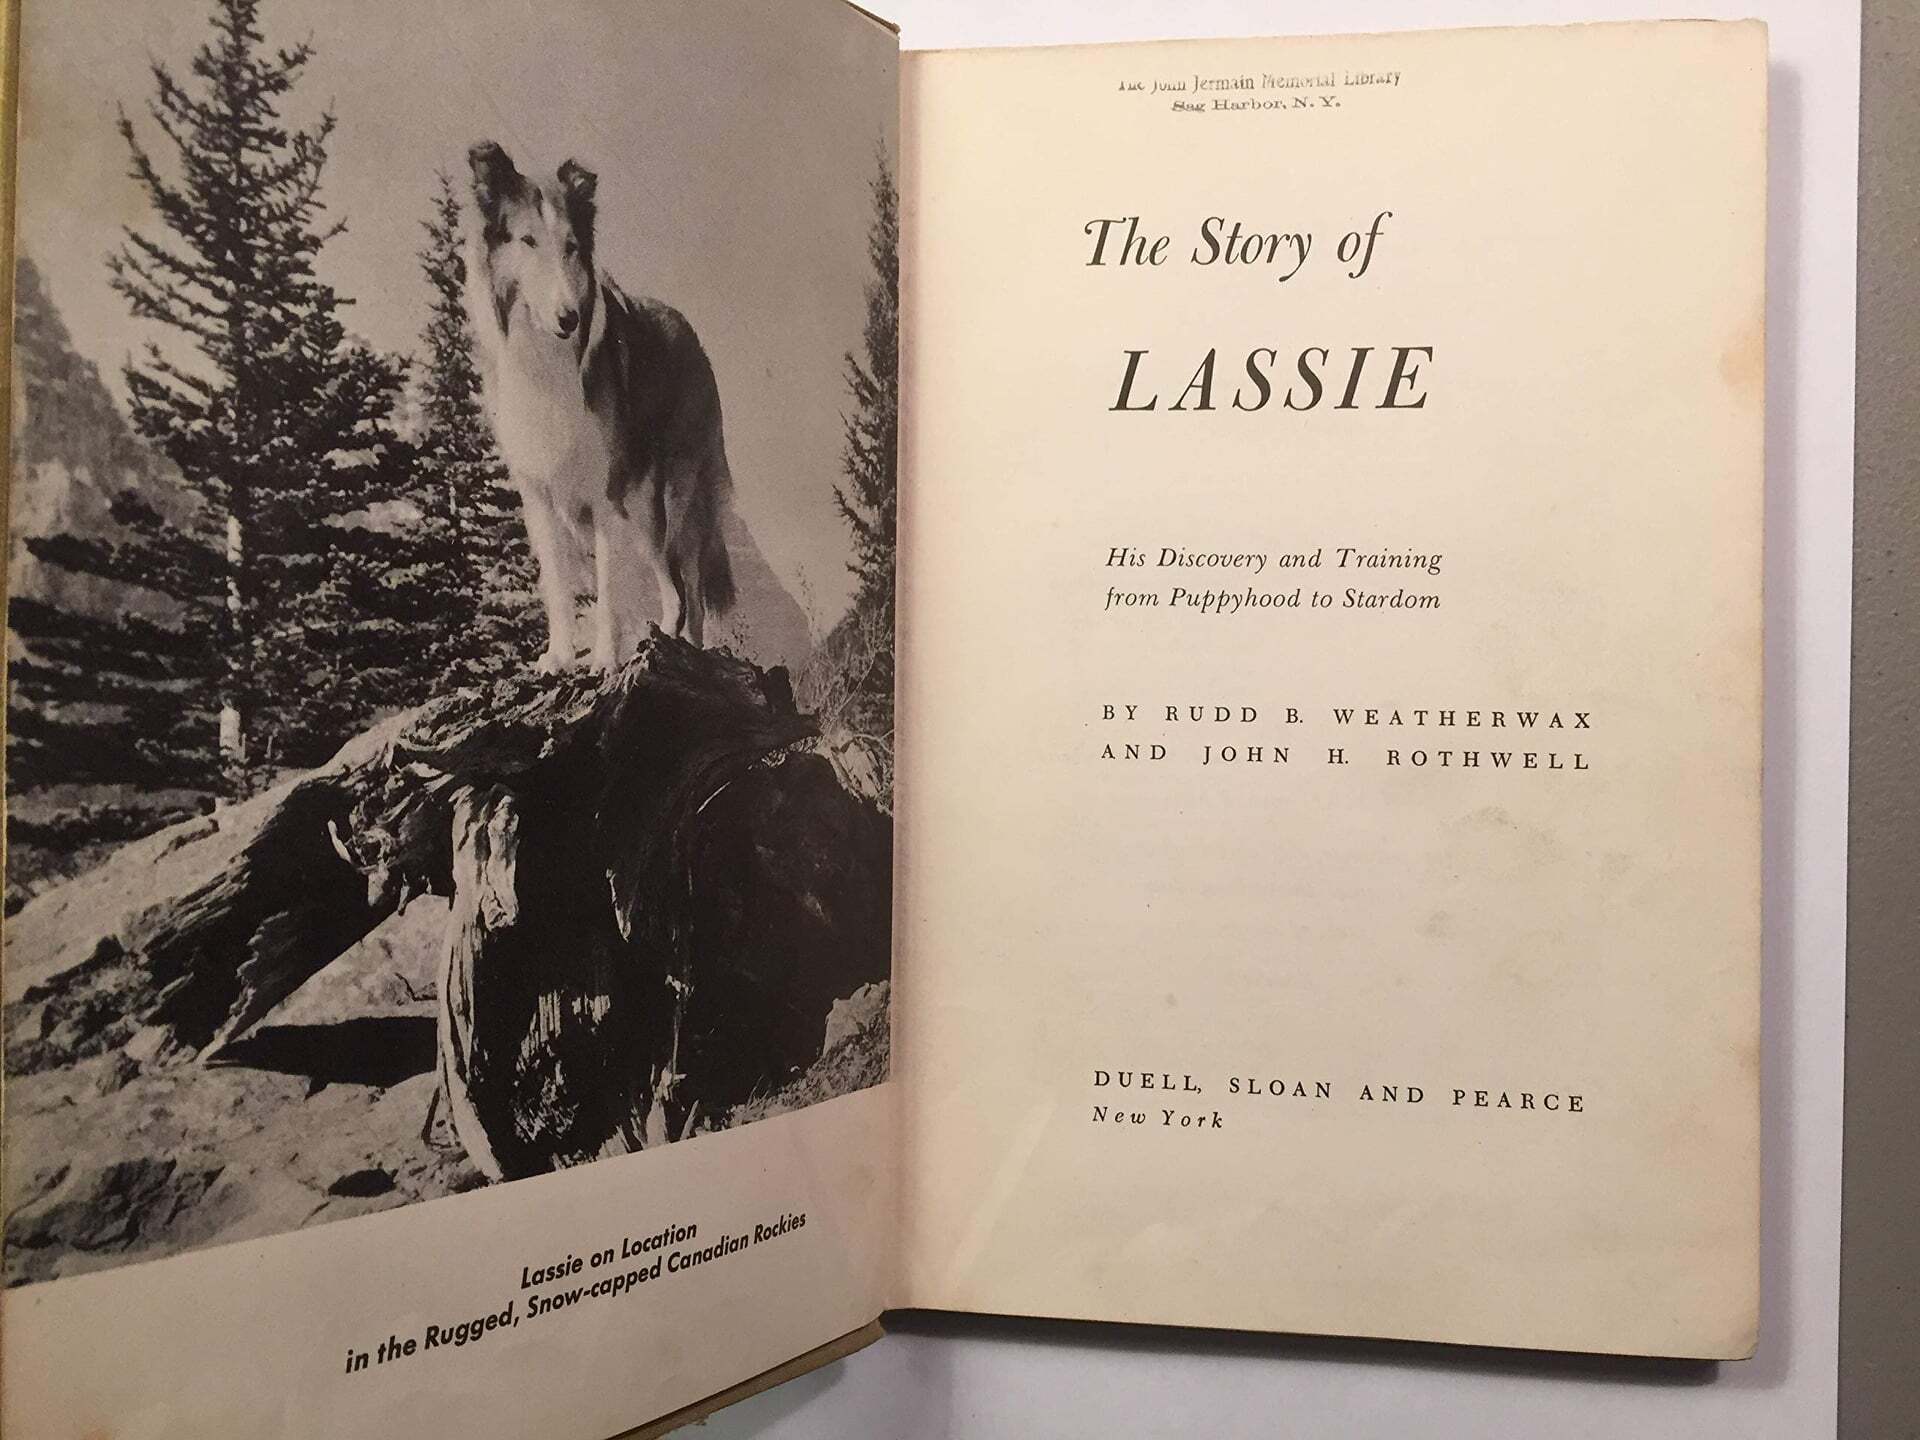 A filmbéli Lassie és Pal története gazdája, Rudd Weatherwax tollából